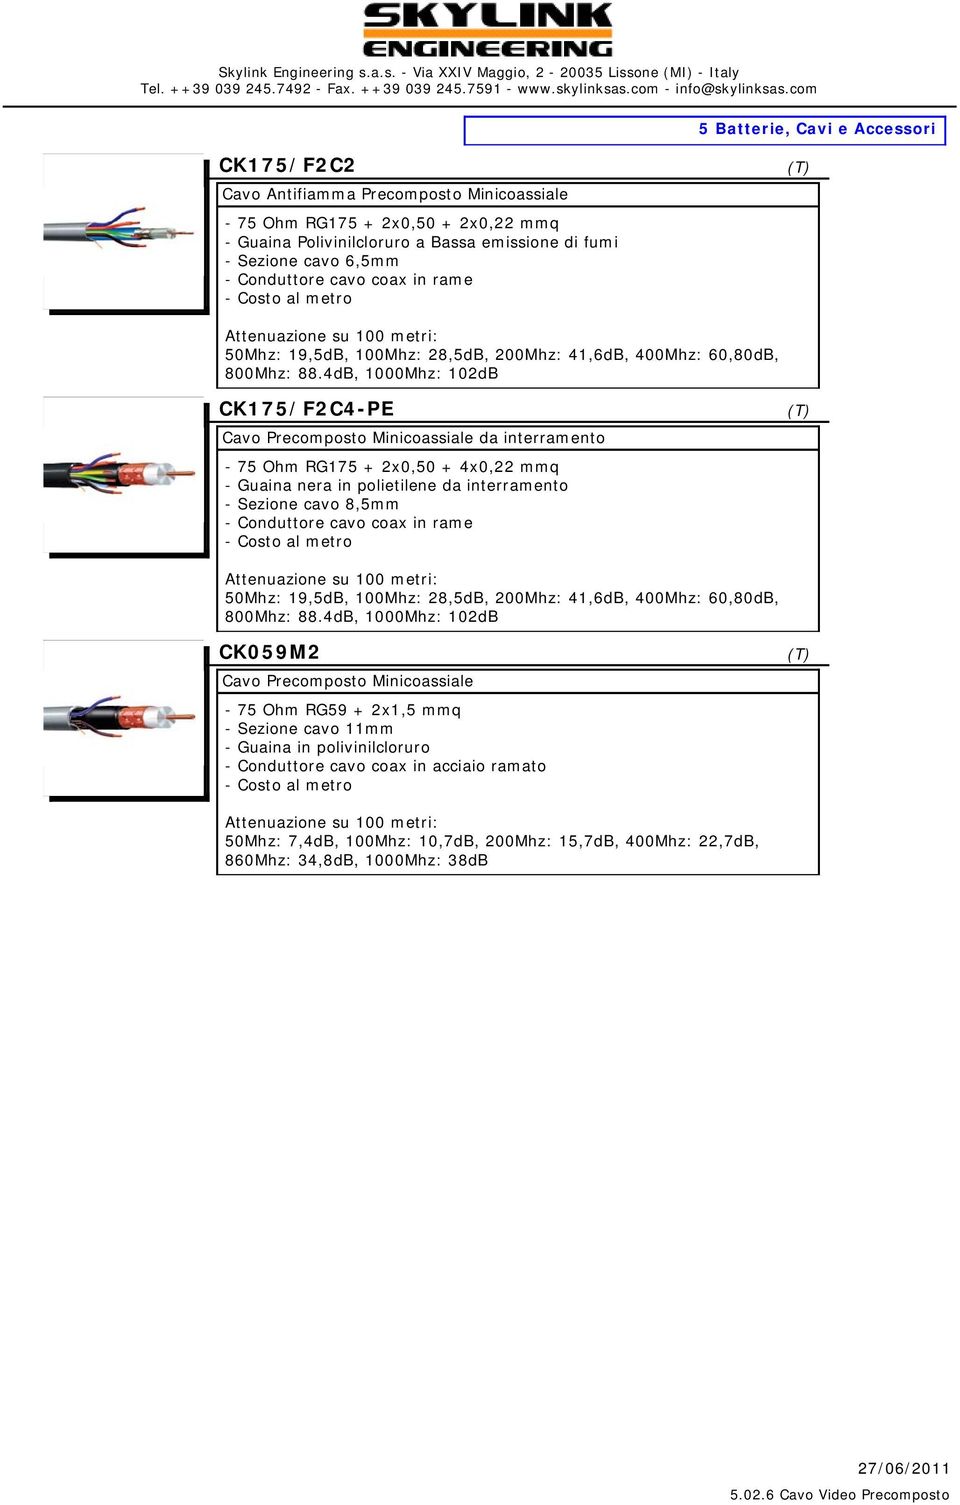 4dB, 1000Mhz: 102dB CK175/F2C4-PE Cavo Precomposto Minicoassiale da interramento - 75 Ohm RG175 + 2x0,50 + 4x0,22 mmq - Guaina nera in polietilene da interramento - Sezione cavo 8,5mm - Conduttore